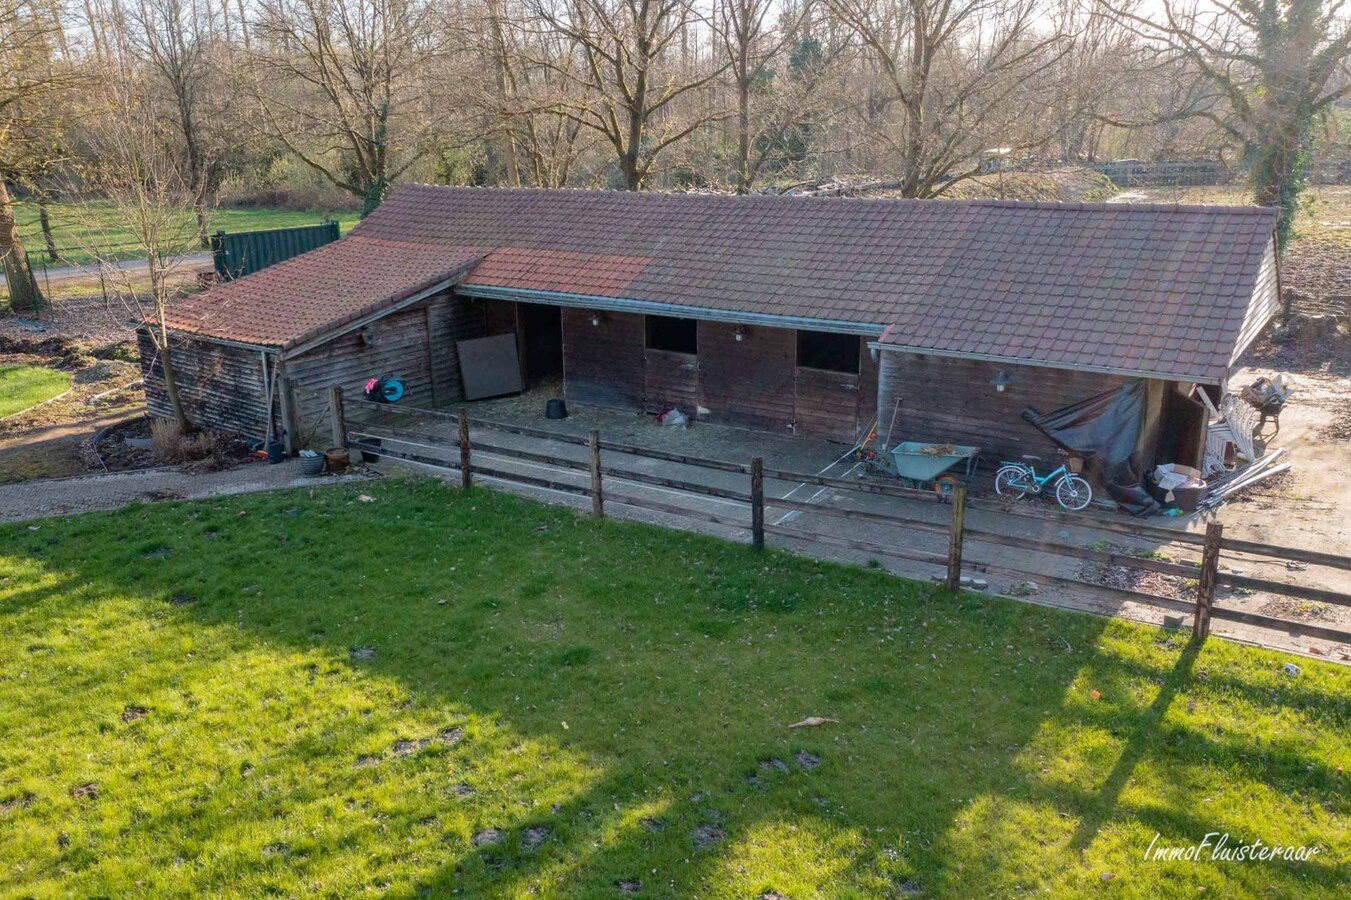 Property sold in Beringen